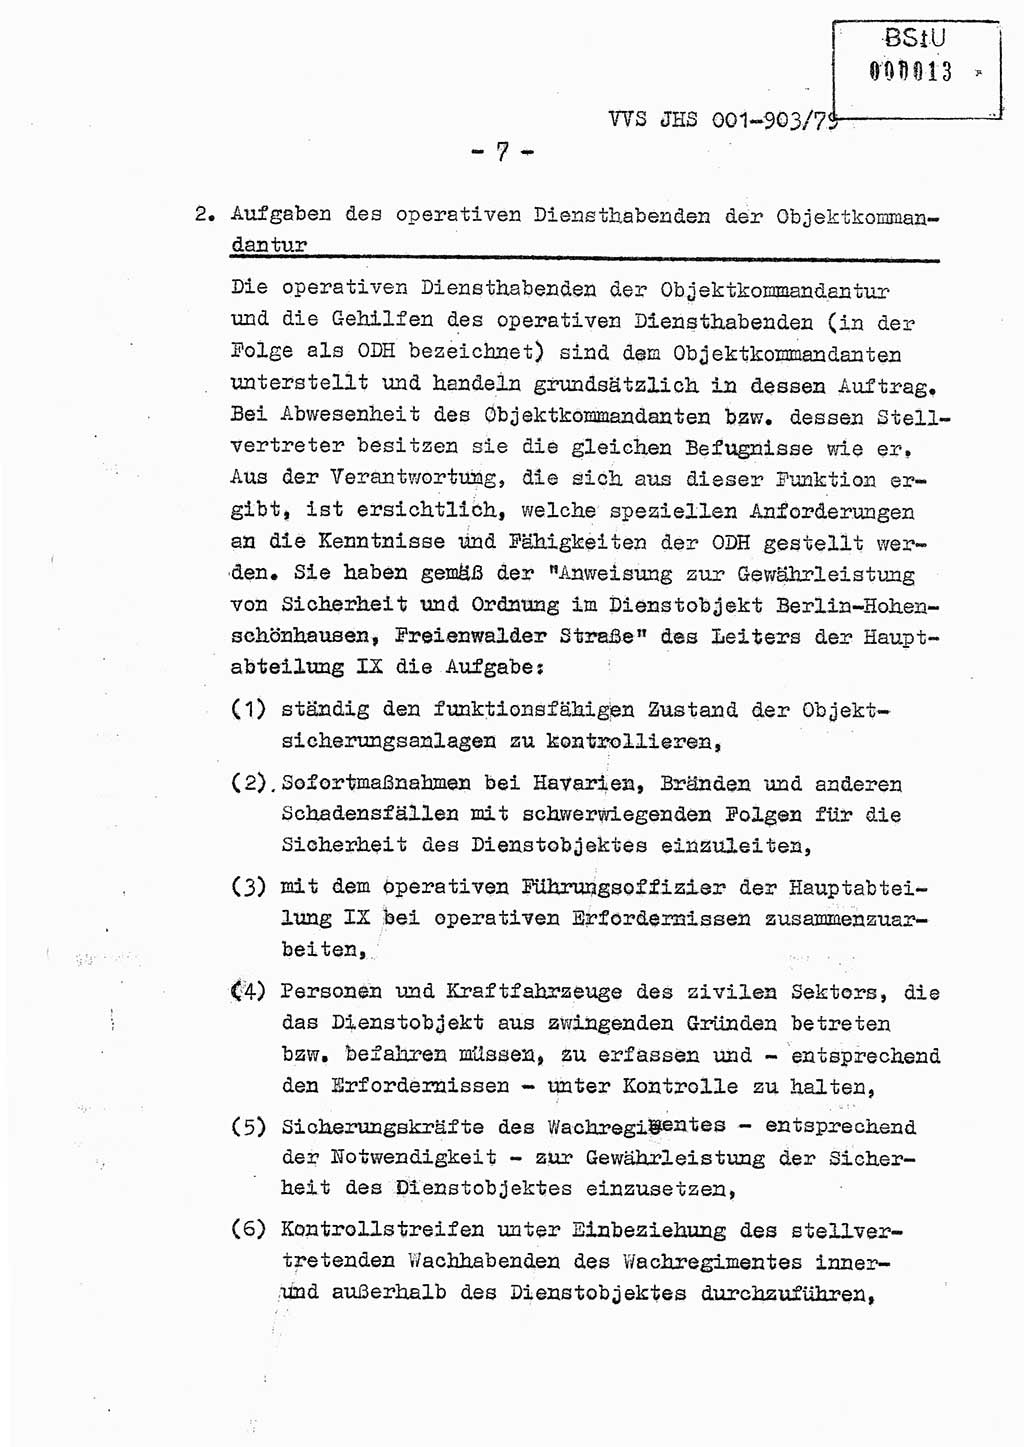 Fachschulabschlußarbeit Oberleutnant Jochen Pfeffer (HA Ⅸ/AGL), Ministerium für Staatssicherheit (MfS) [Deutsche Demokratische Republik (DDR)], Juristische Hochschule (JHS), Vertrauliche Verschlußsache (VVS) 001-903/79, Potsdam 1979, Seite 7 (FS-Abschl.-Arb. MfS DDR JHS VVS 001-903/79 1979, S. 7)